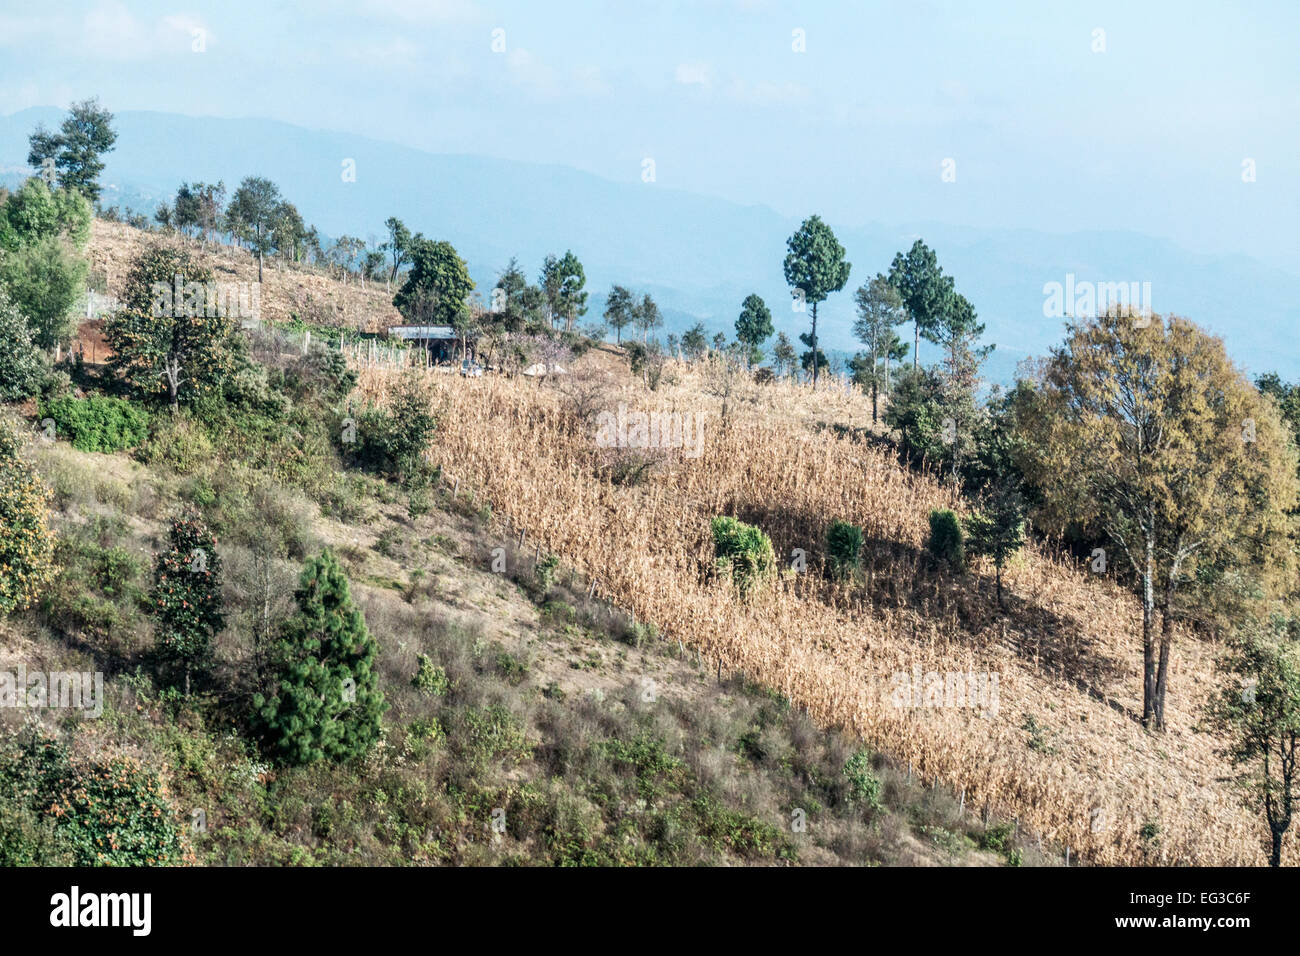 high altitude mountainous rural countryside near San Cristobal de las Casas Chiapas with subsistence farming on steep hillside Stock Photo